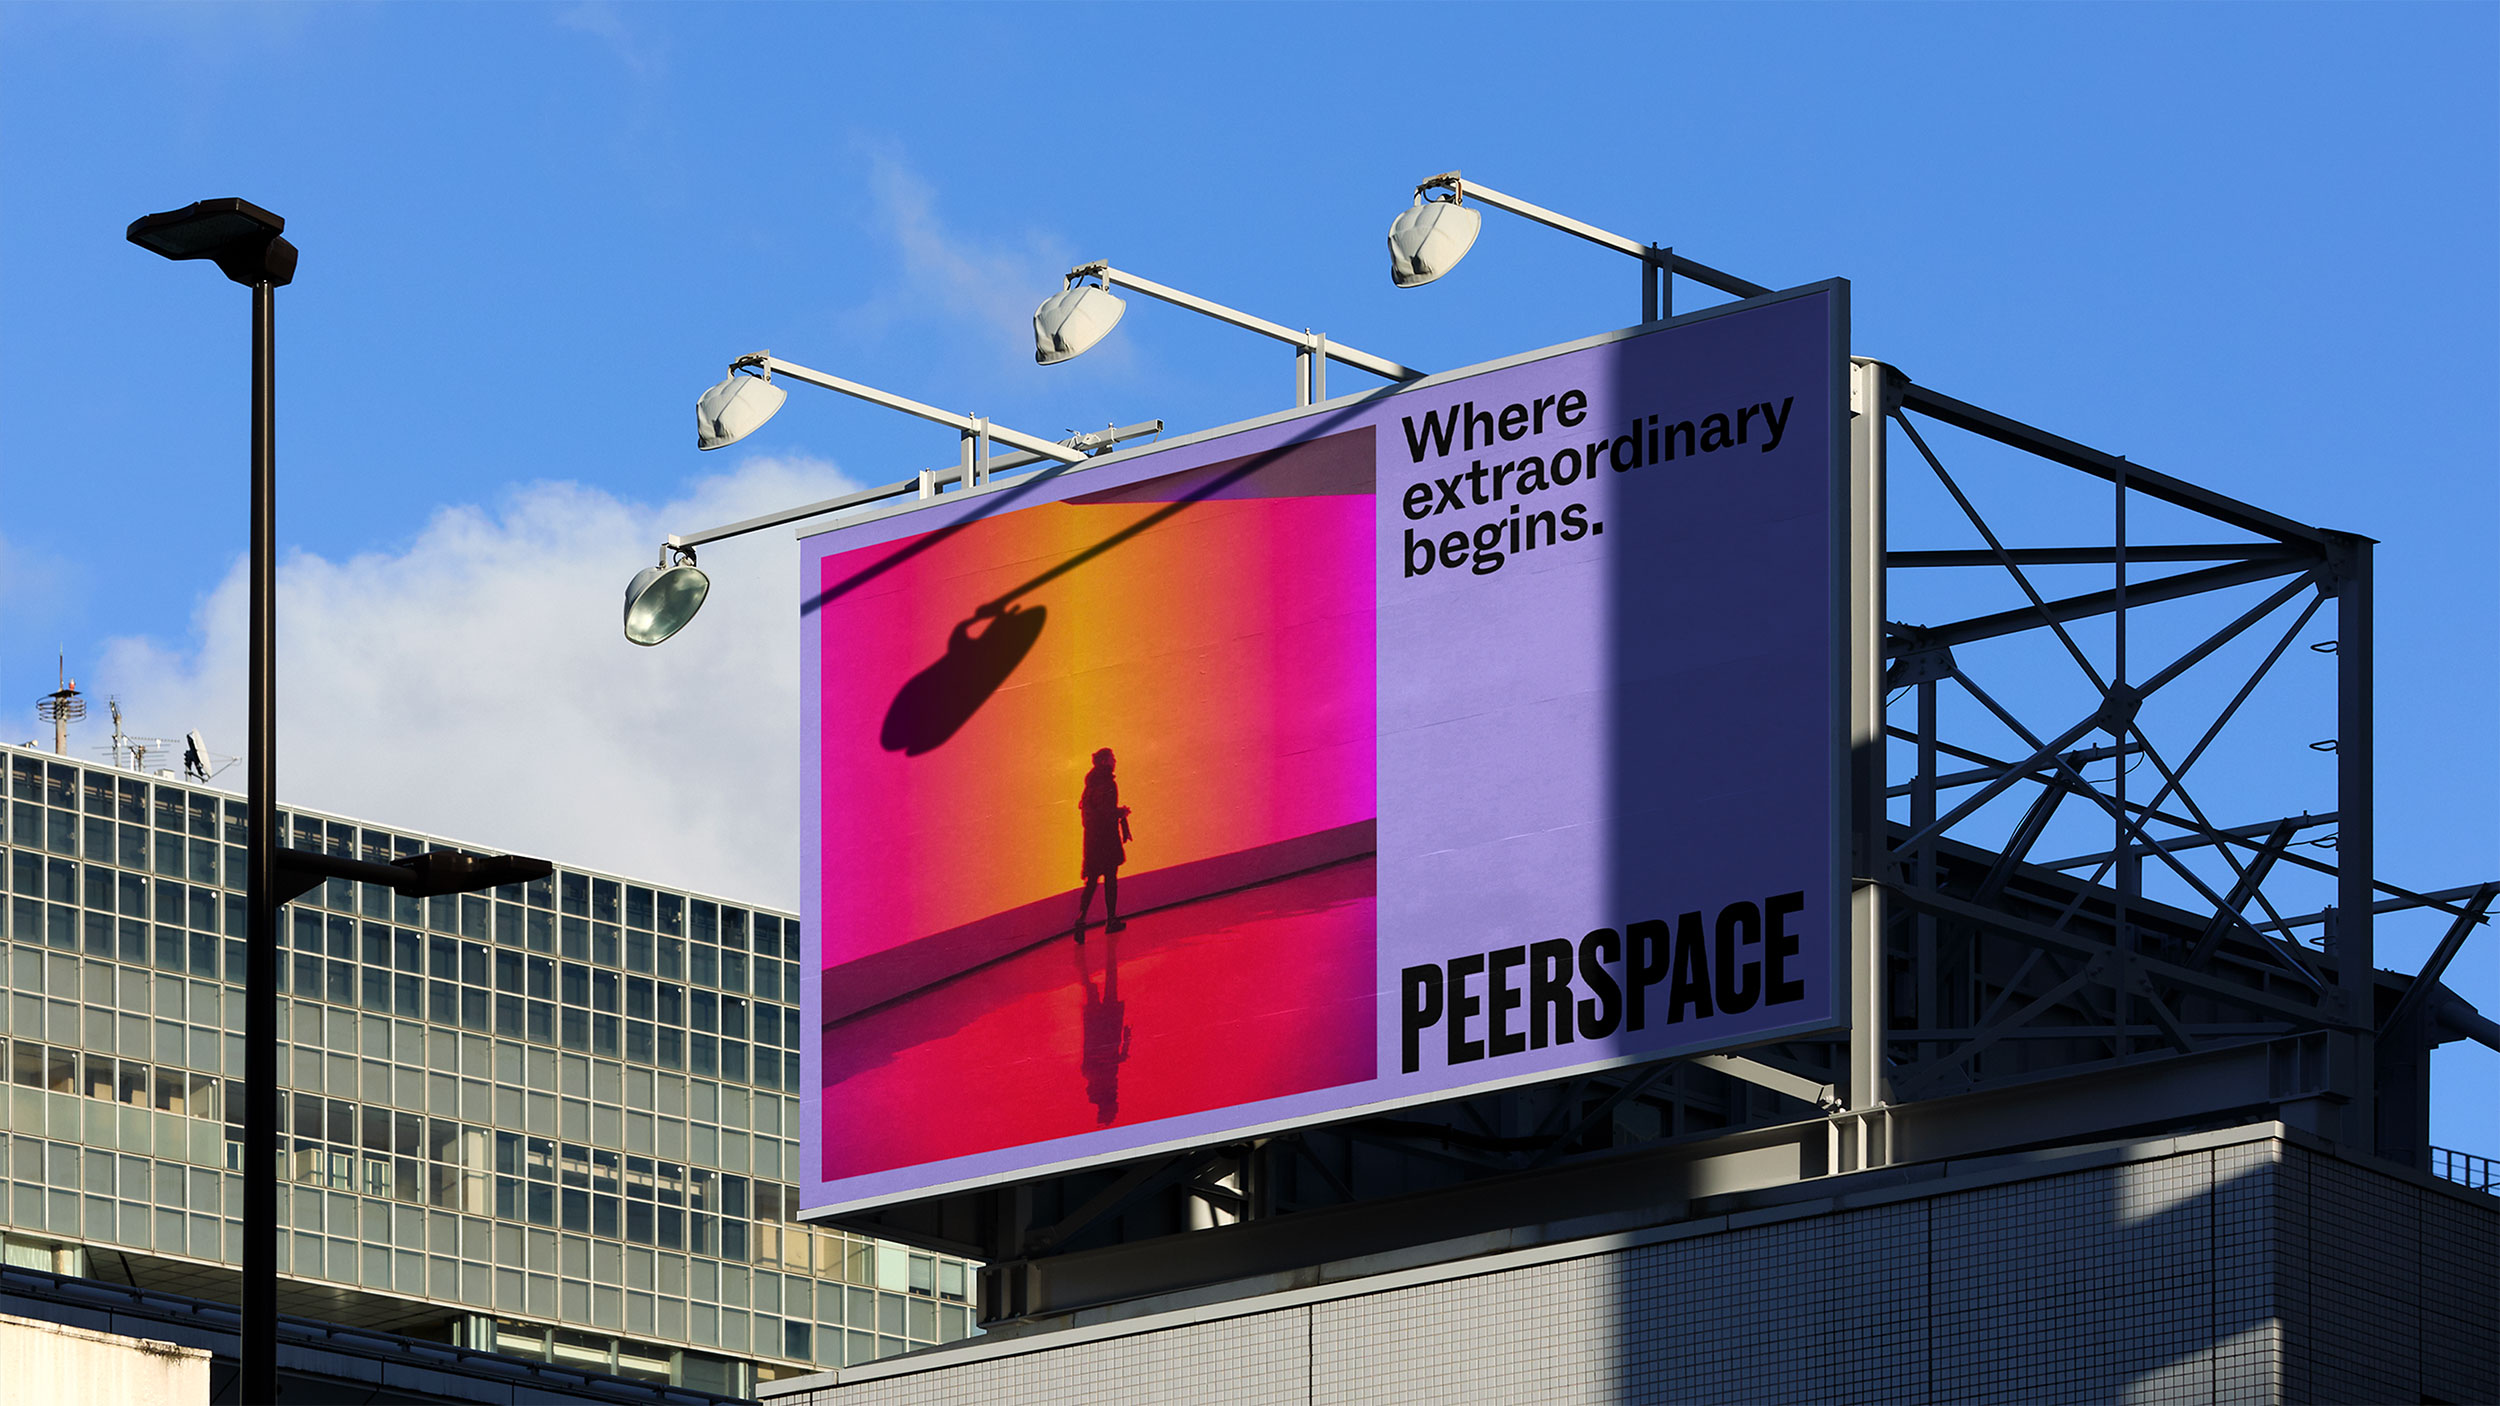 Peerspace, Matthijs van Leeuwen, Matt van Leeuwen, Mother Design, Ben Clark, Bentzion Goldman, Morgan Smith